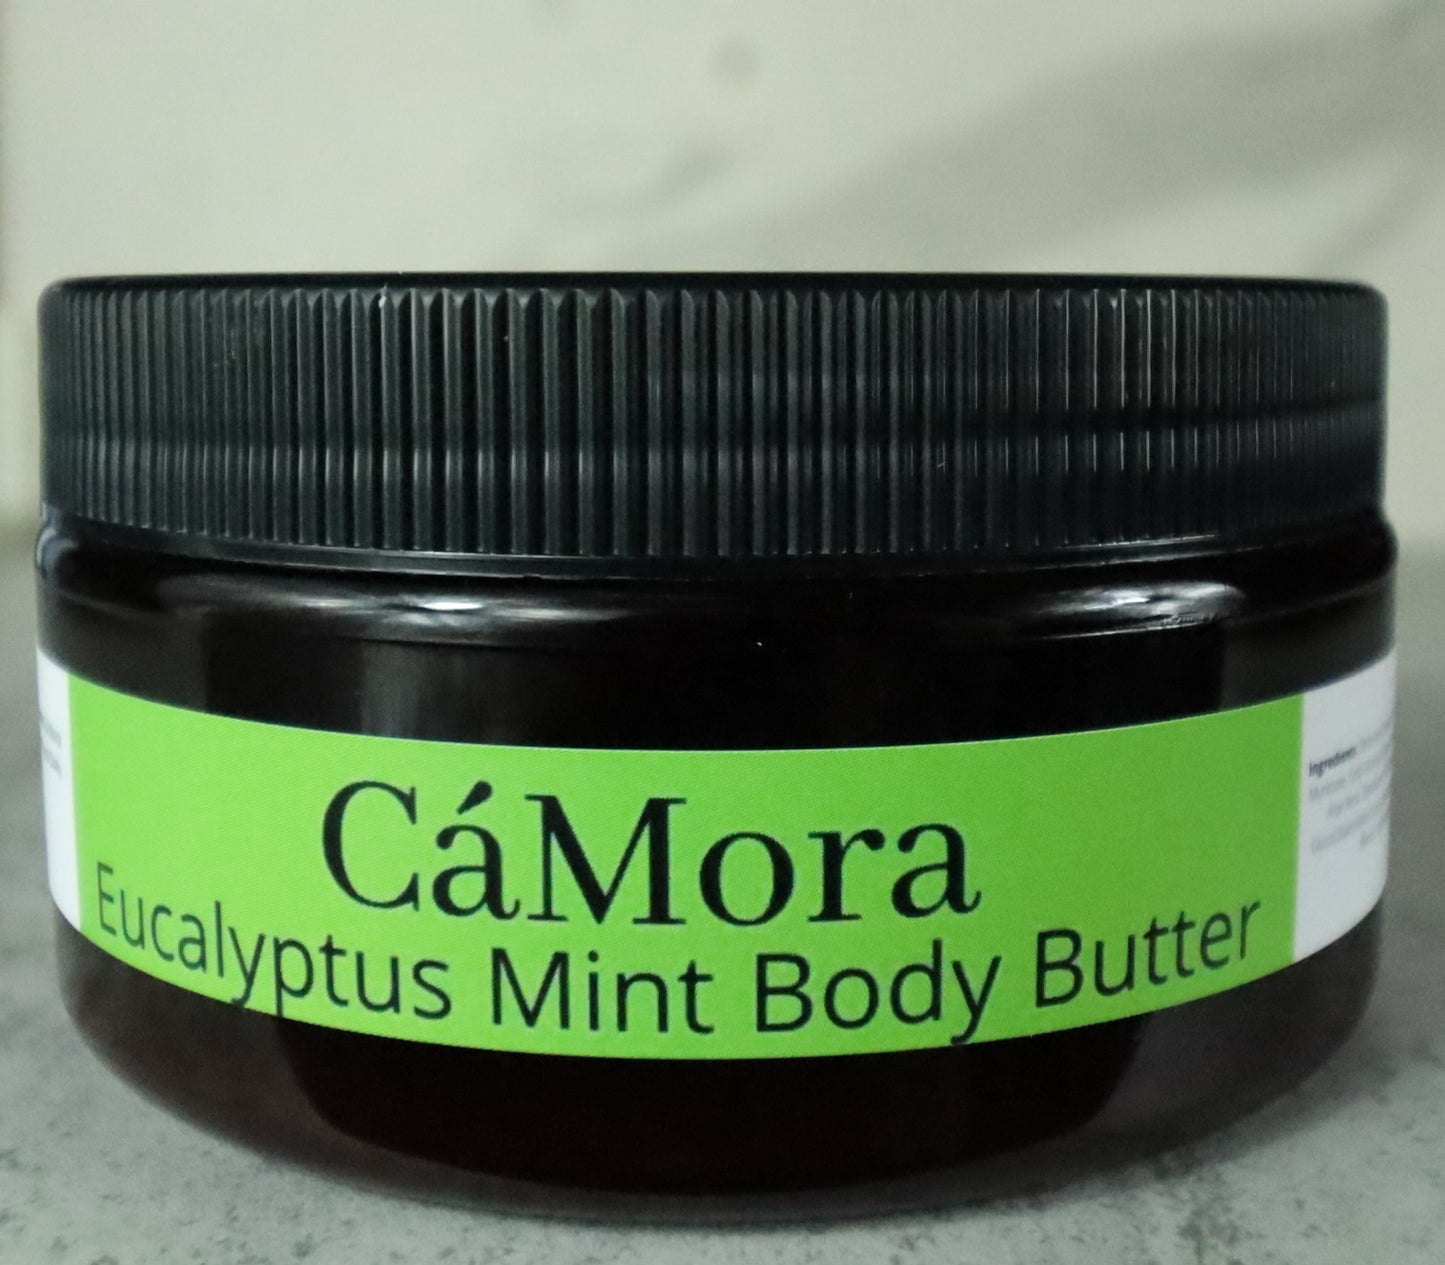 Eucalyptus Mint  body butter for moisturized skin.